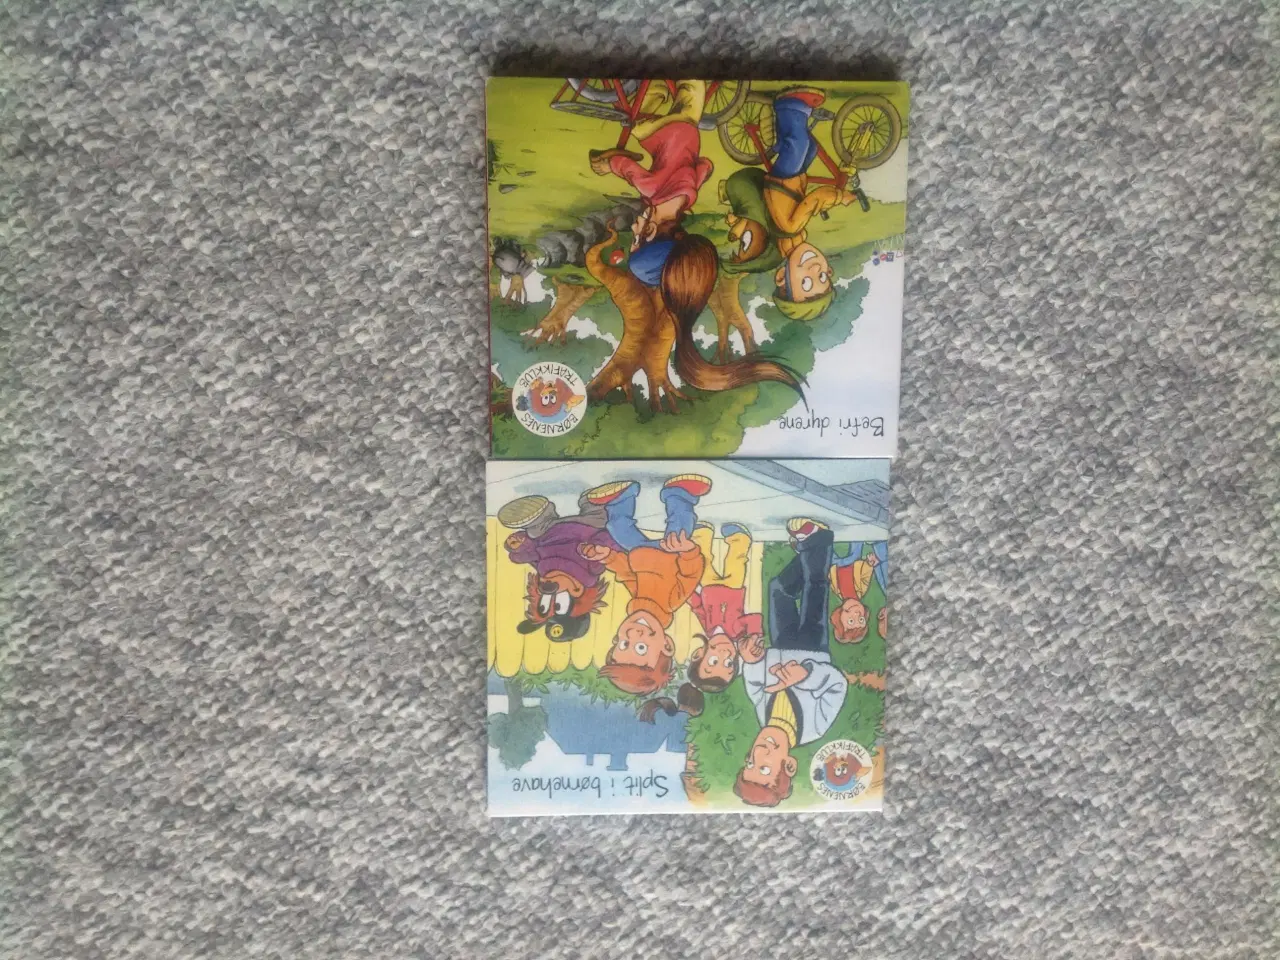 Billede 1 - 2 stk CD fra Børnenes Trafikklub